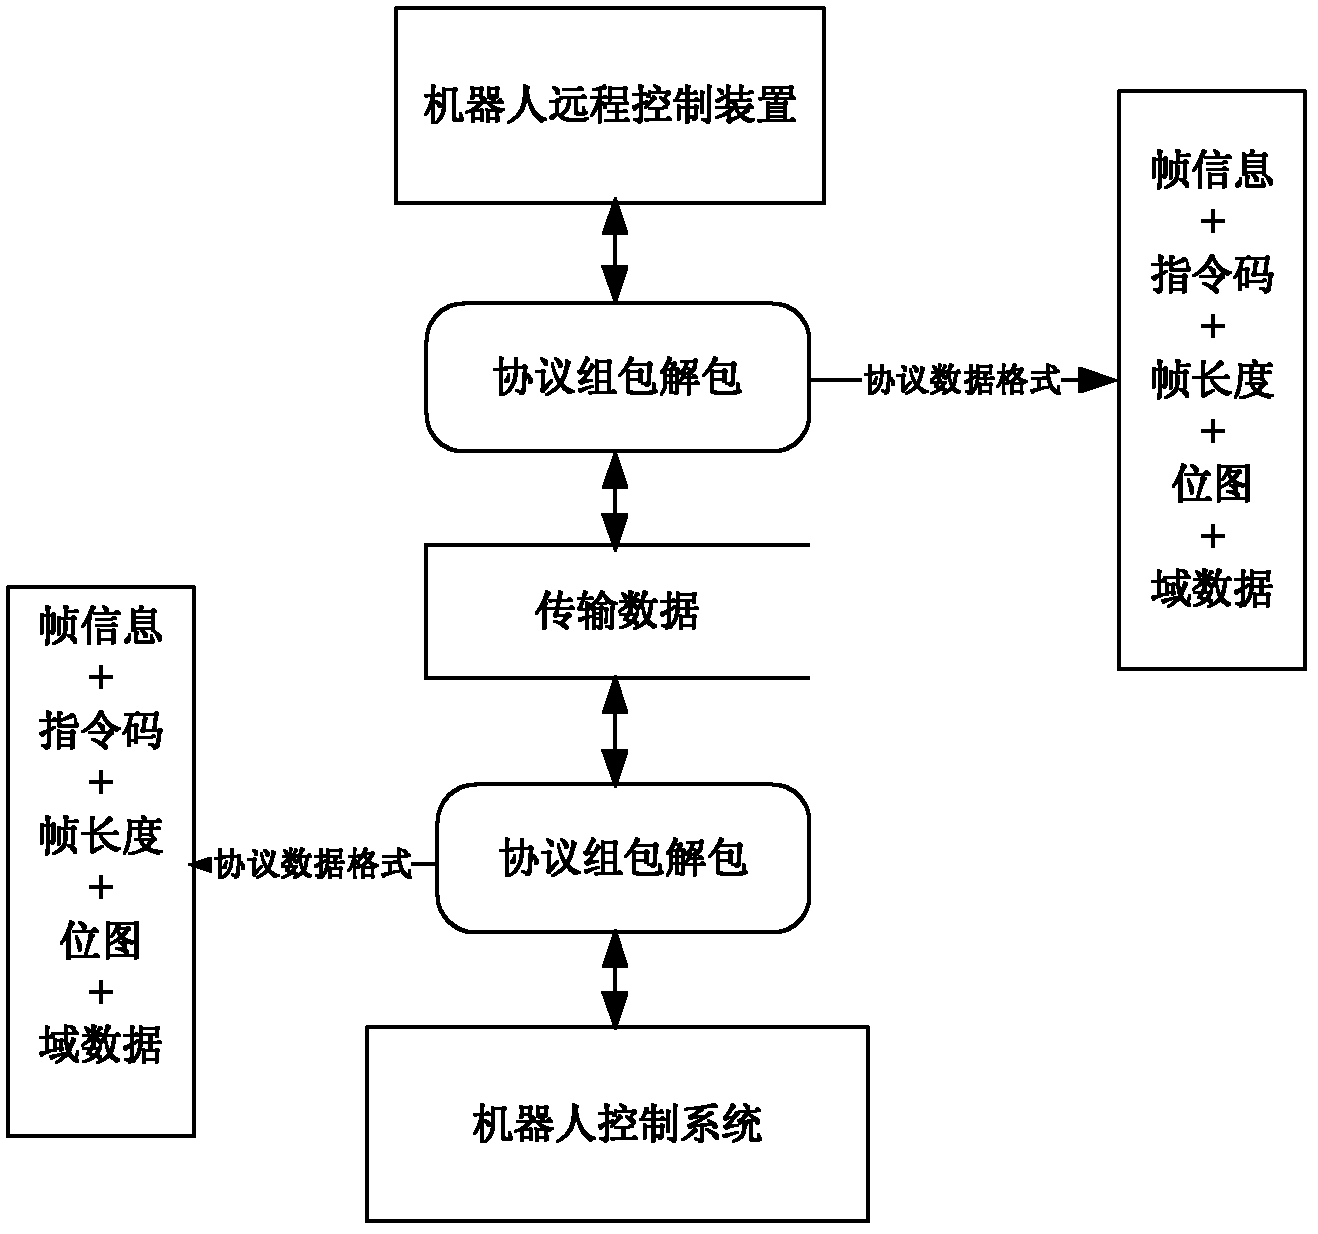 Robot protocol implementation method based on Ethernet